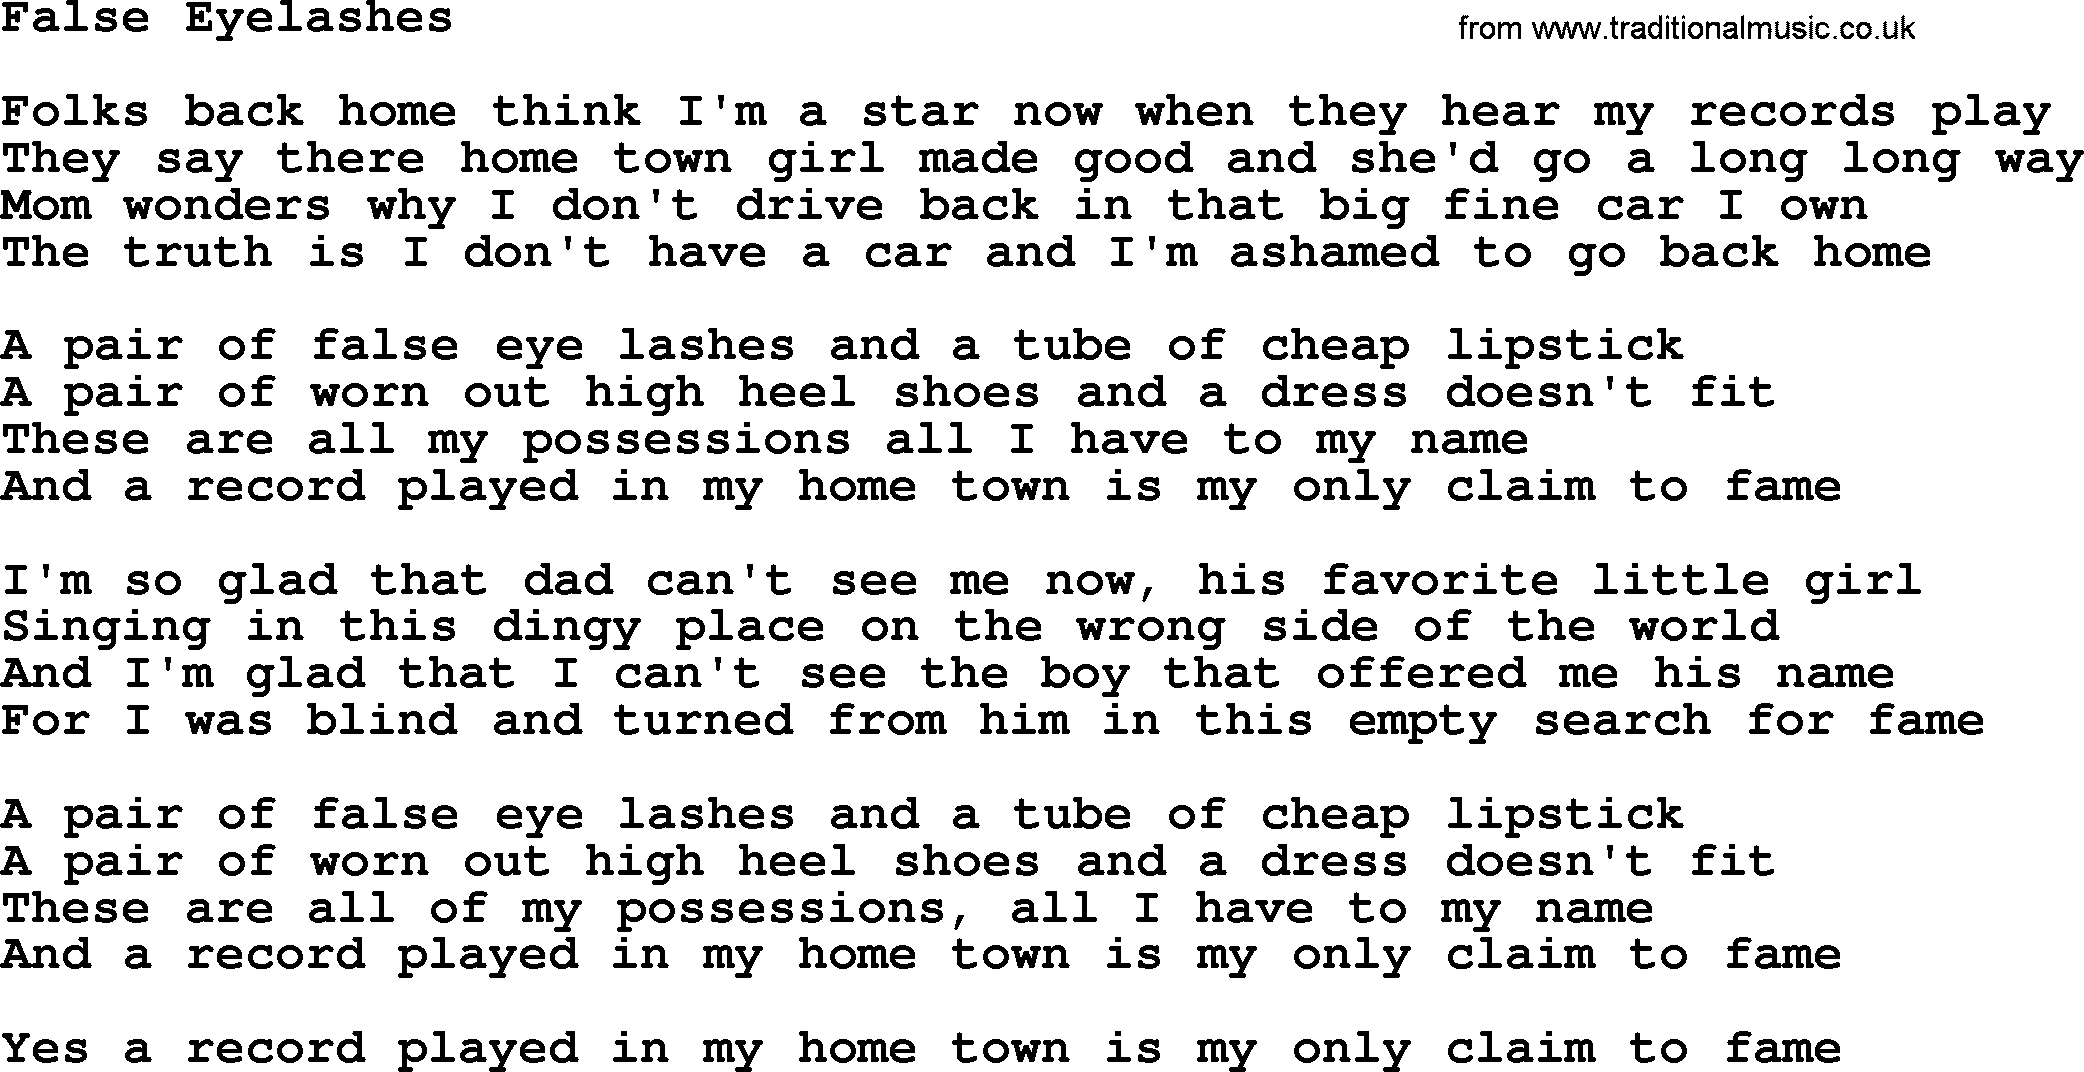 Dolly Parton song False Eyelashes.txt lyrics